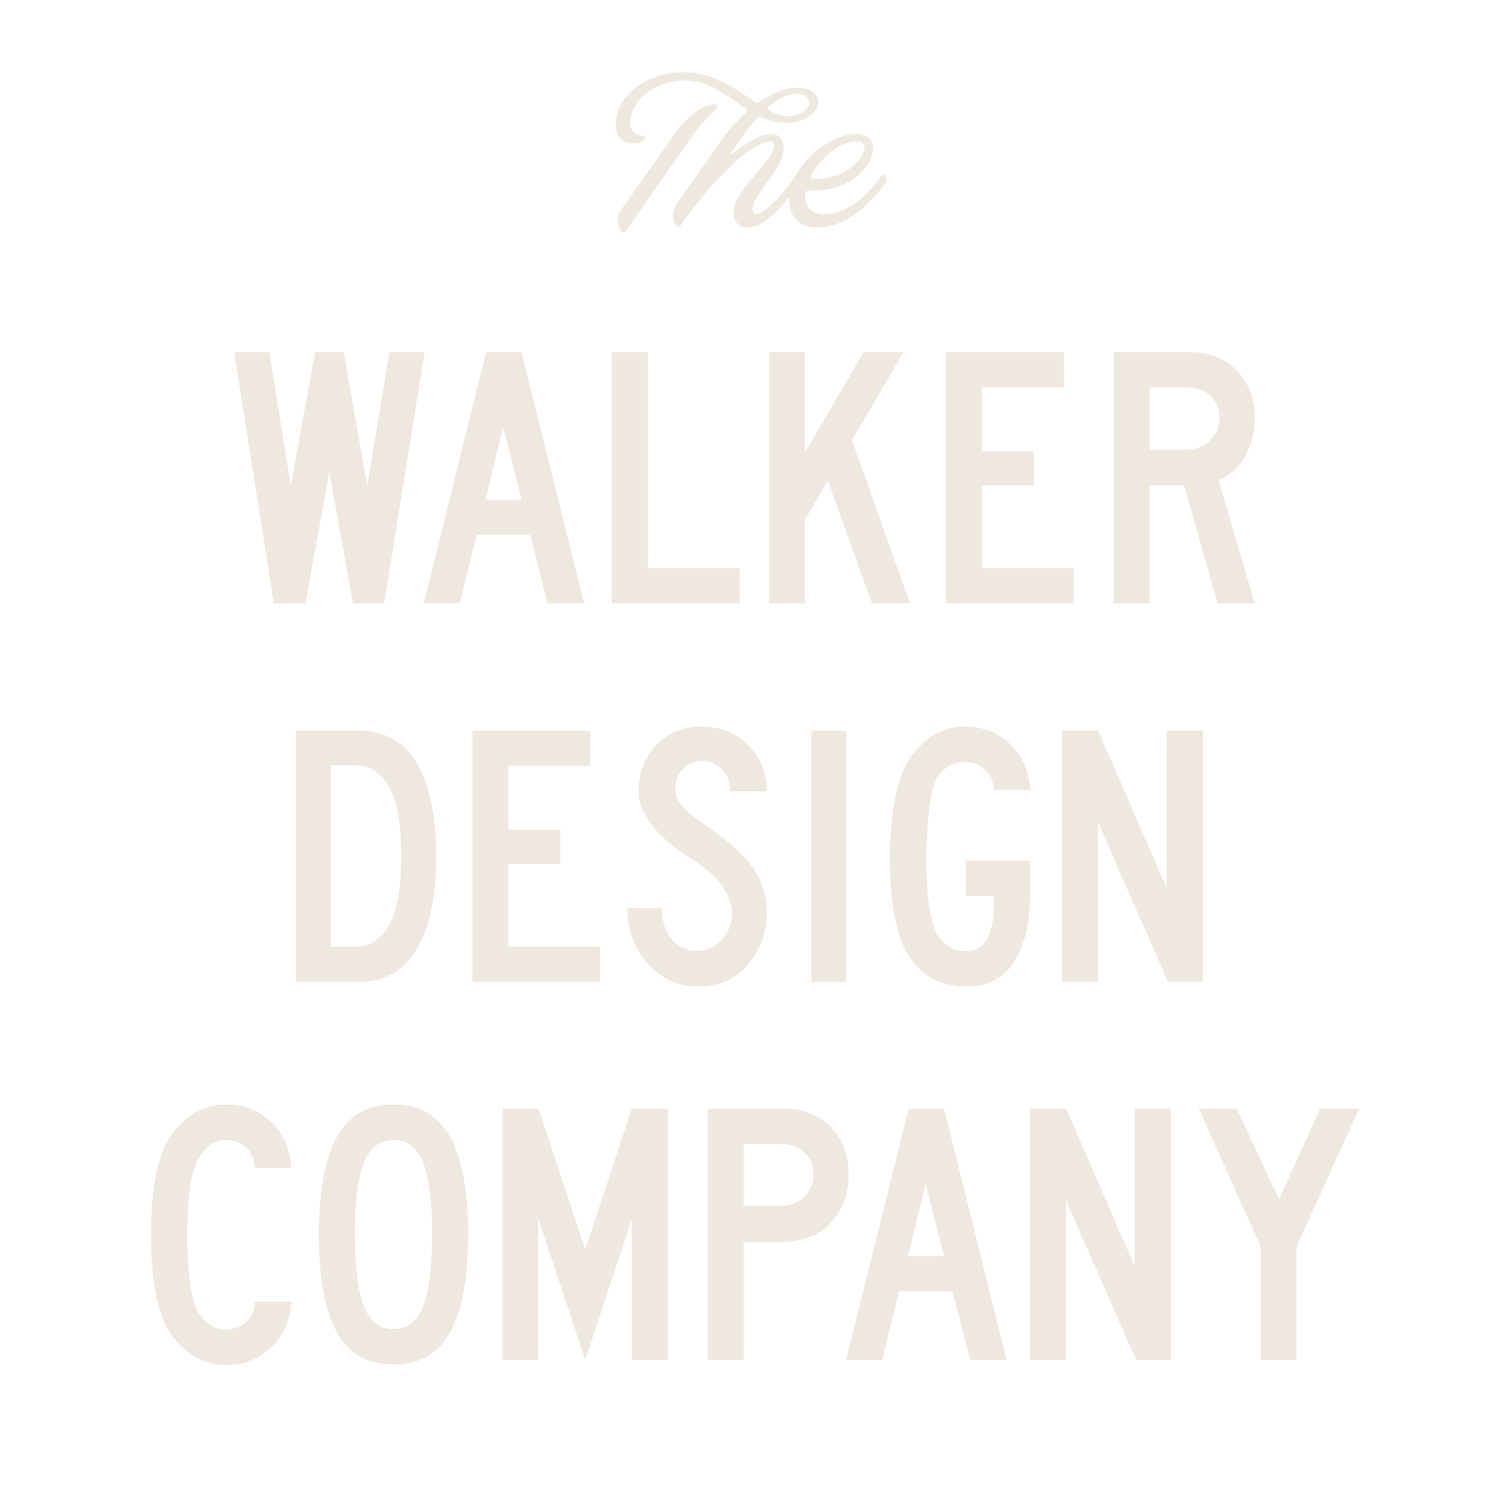 Walker Design Co.